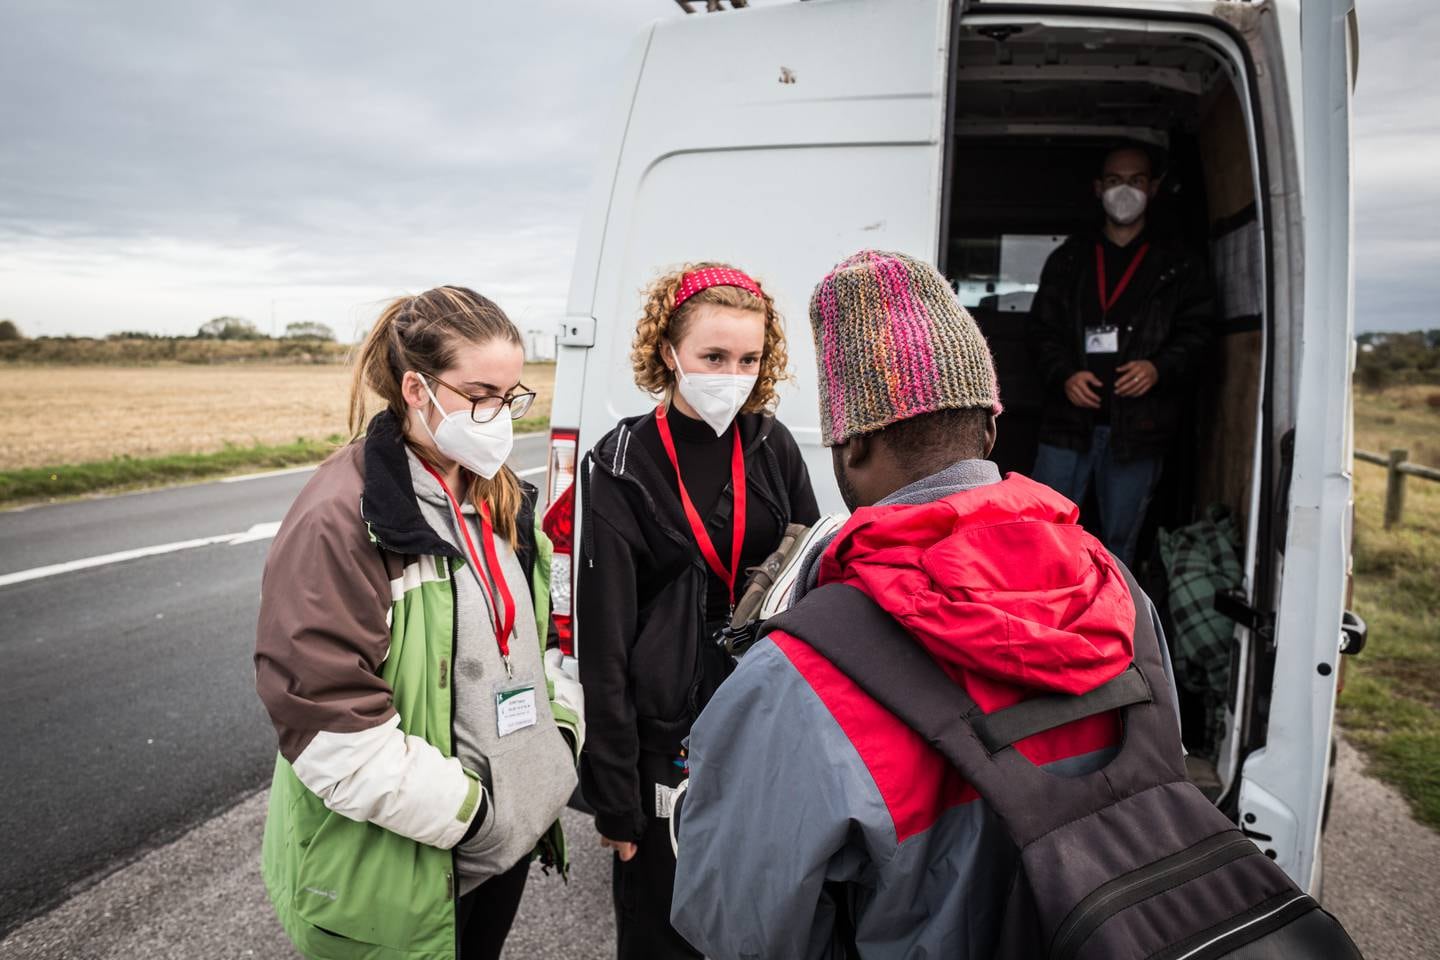 27.	Kayleigh and Liddy, to frivillige i Collective Aid, snakker med Ali, en ung sudanesisk migrant utenfor Old Lidl, den største migrantleiren i Calais.